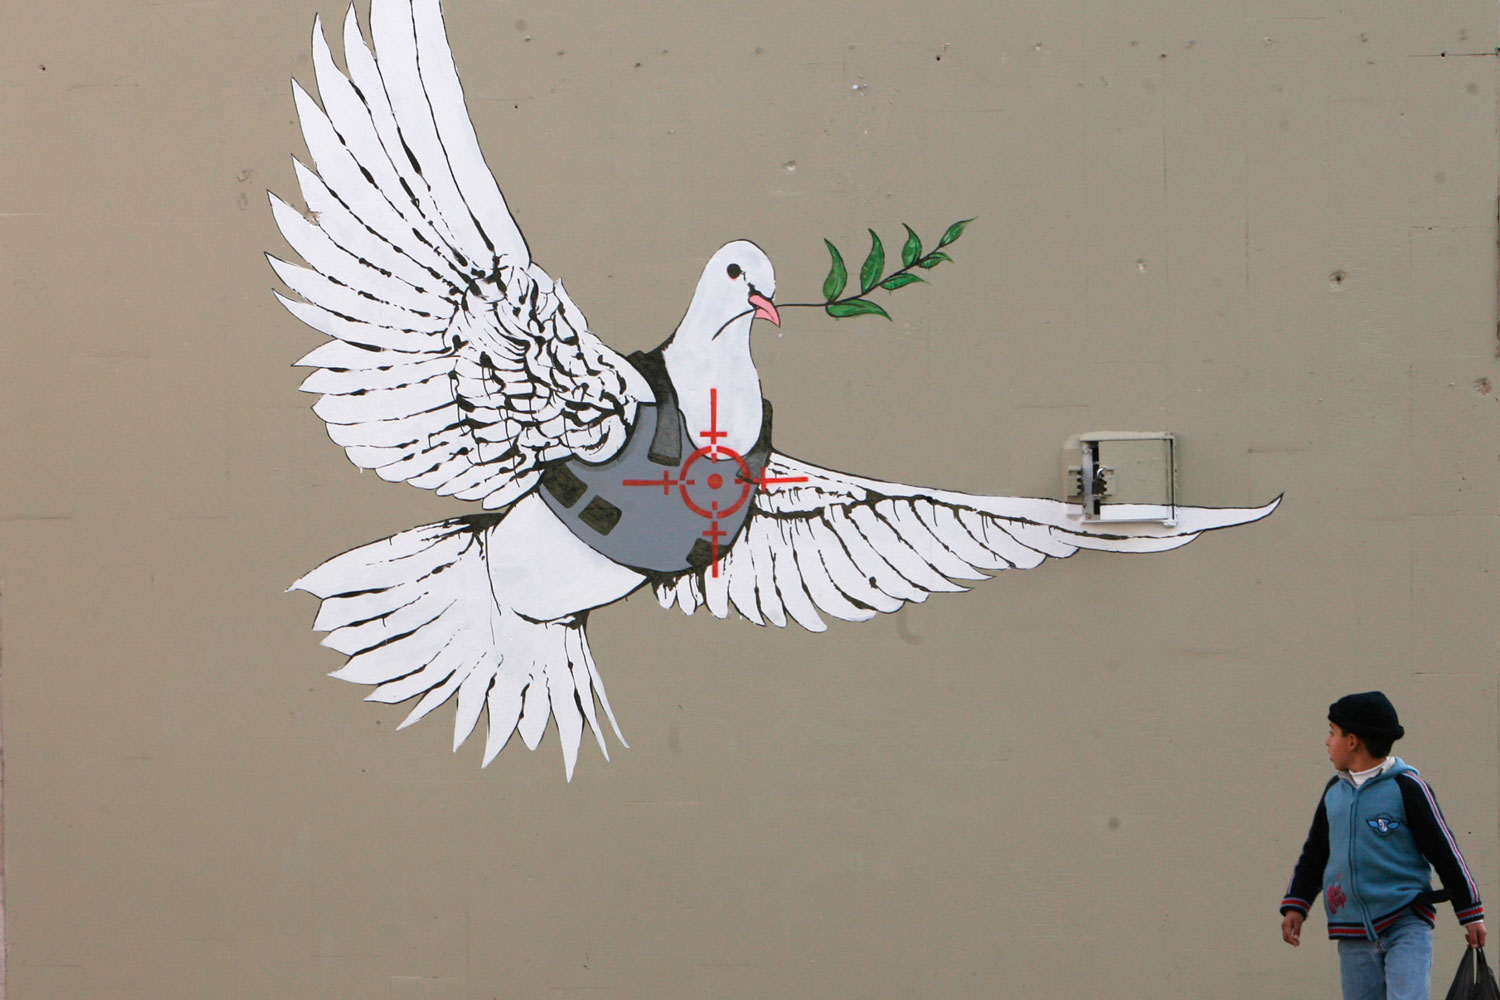 Provocación y política son la base de toda la obra artística del polémico Banksy